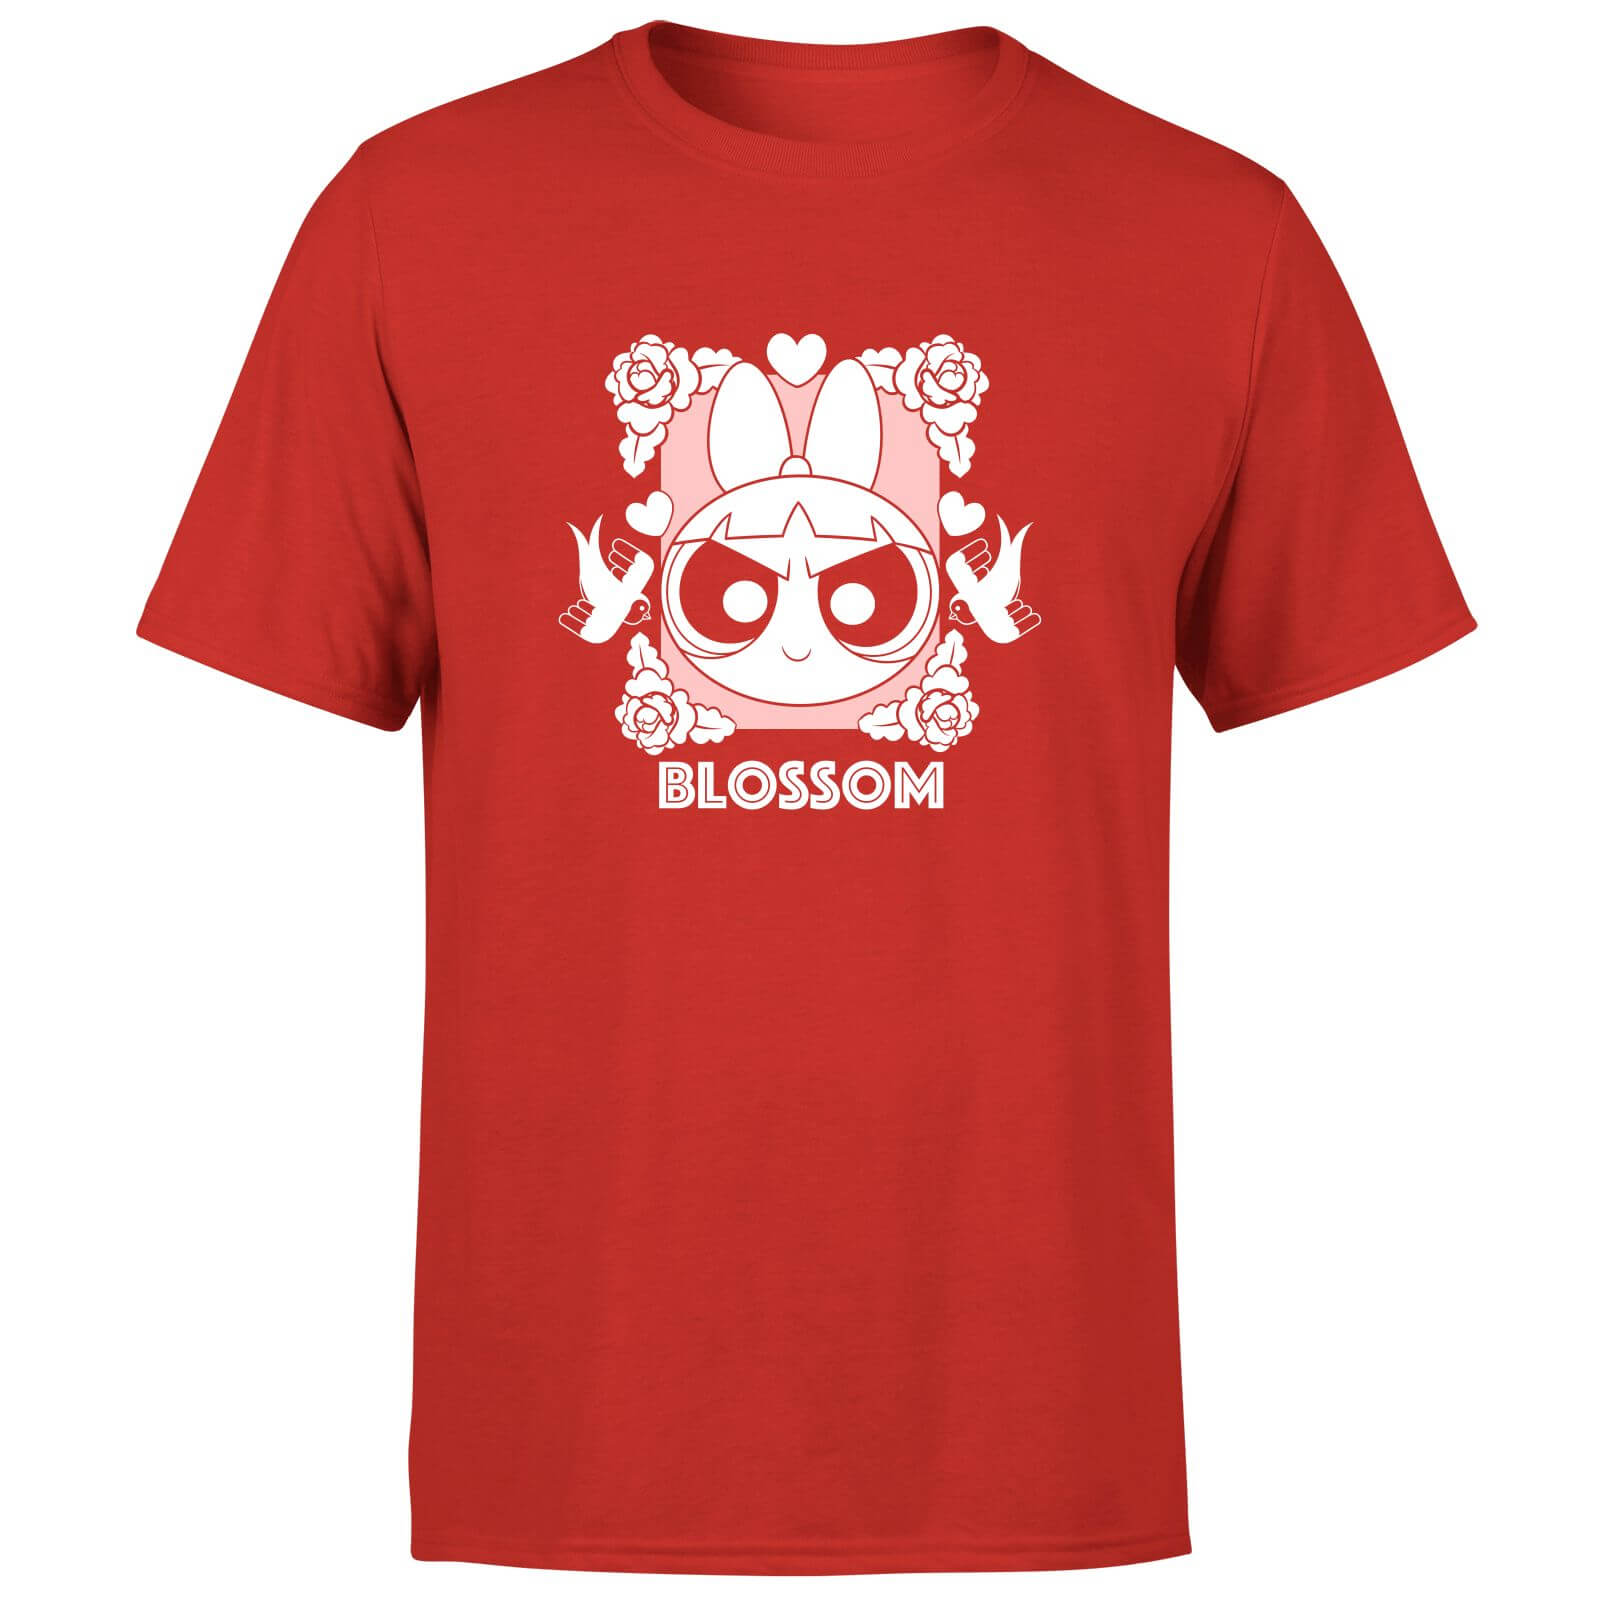 The Powerpuff Girls Blossom Unisex T-Shirt - Red - XS - Red